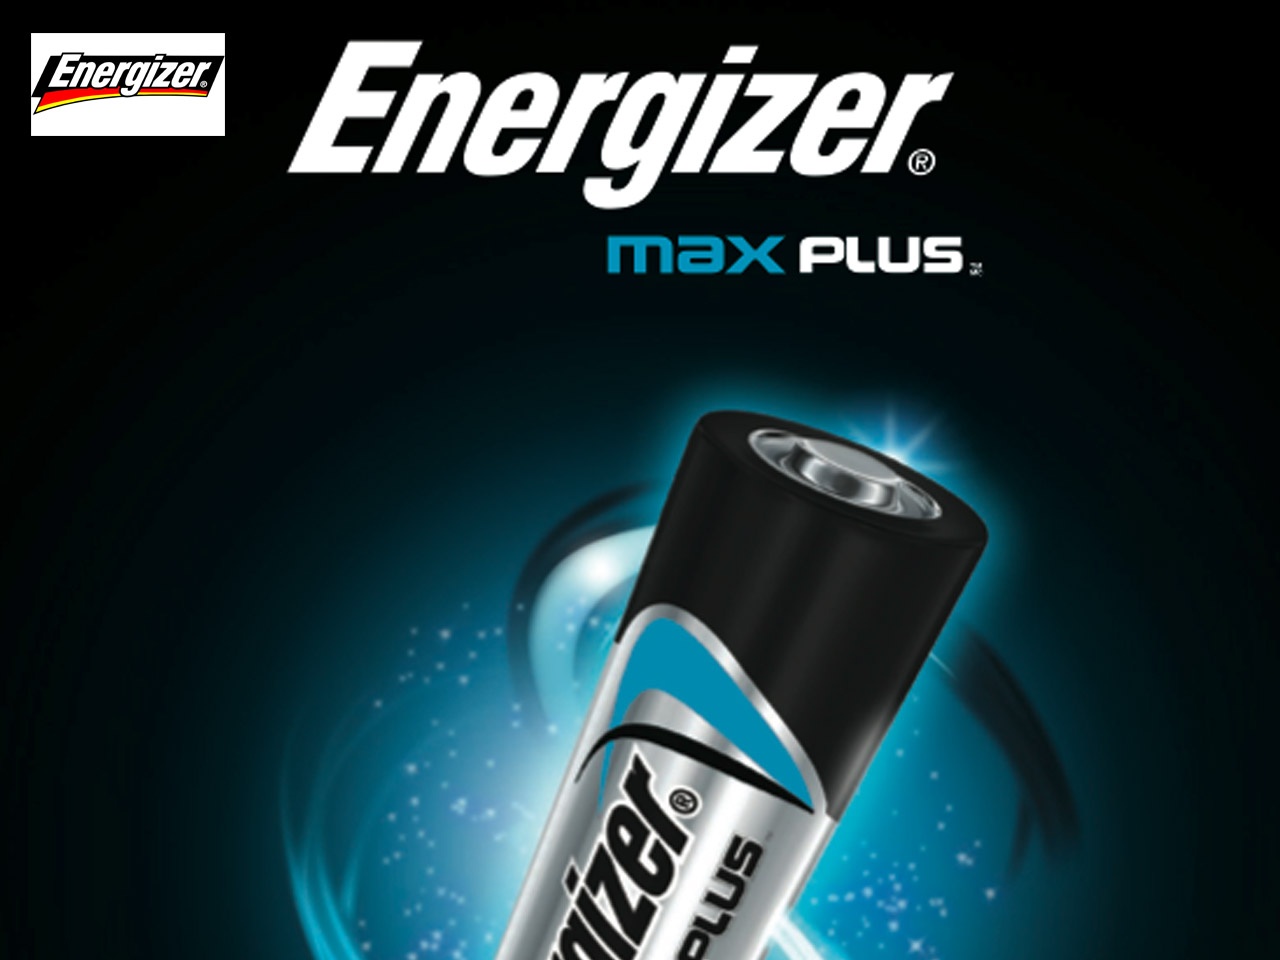 Energizer lance Max Plus, sa pile la plus puissante !